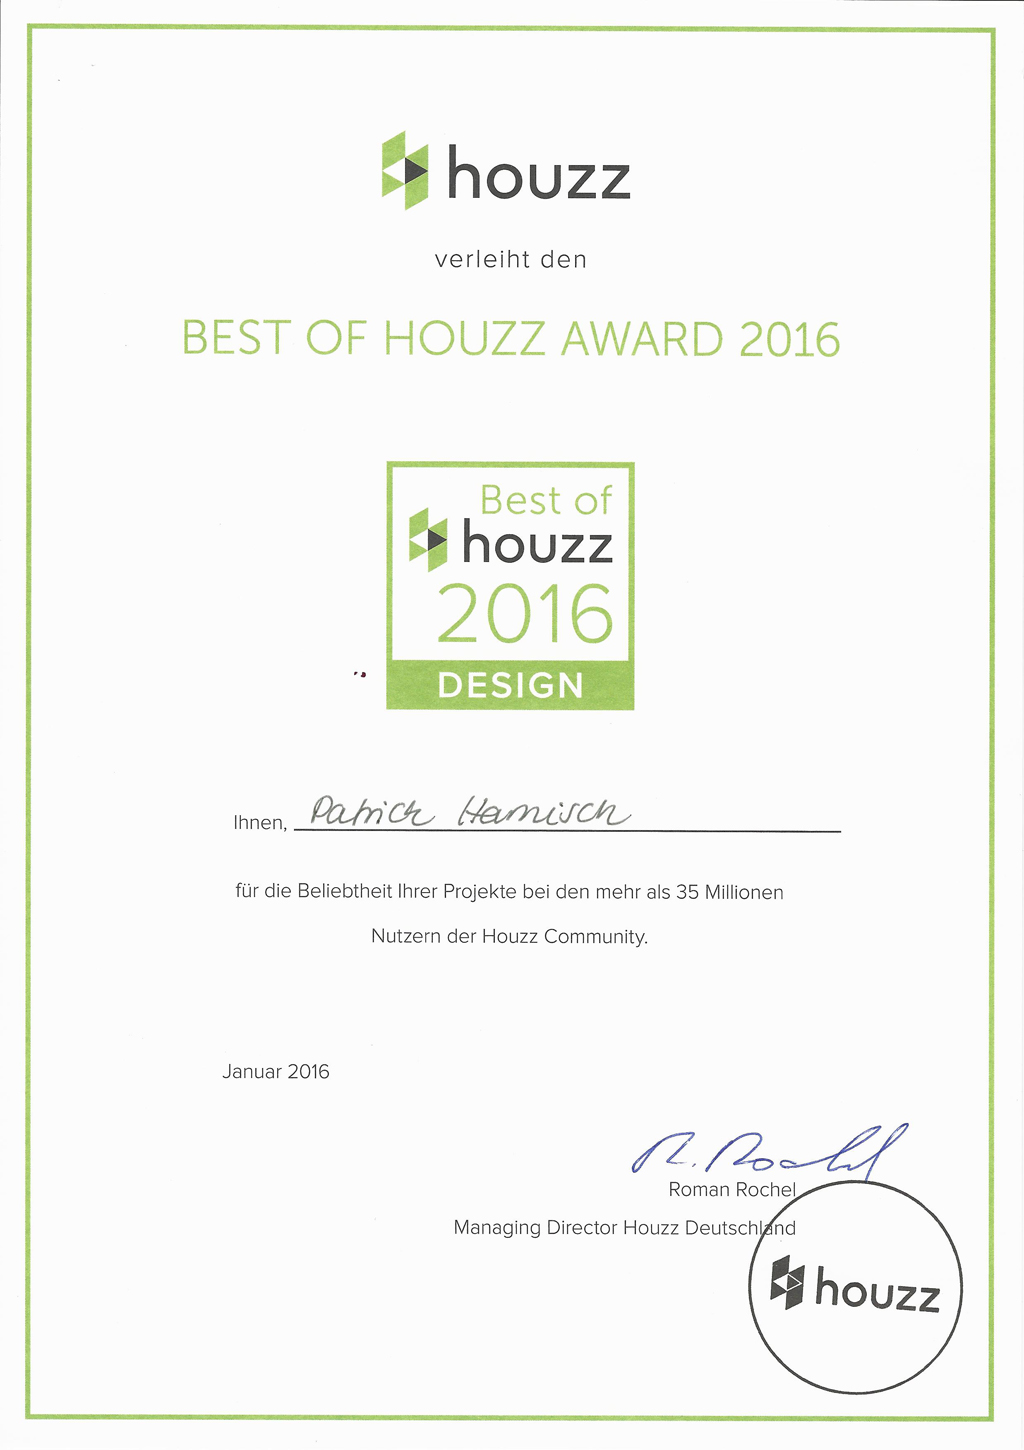 Best Of Houzz Design 2016